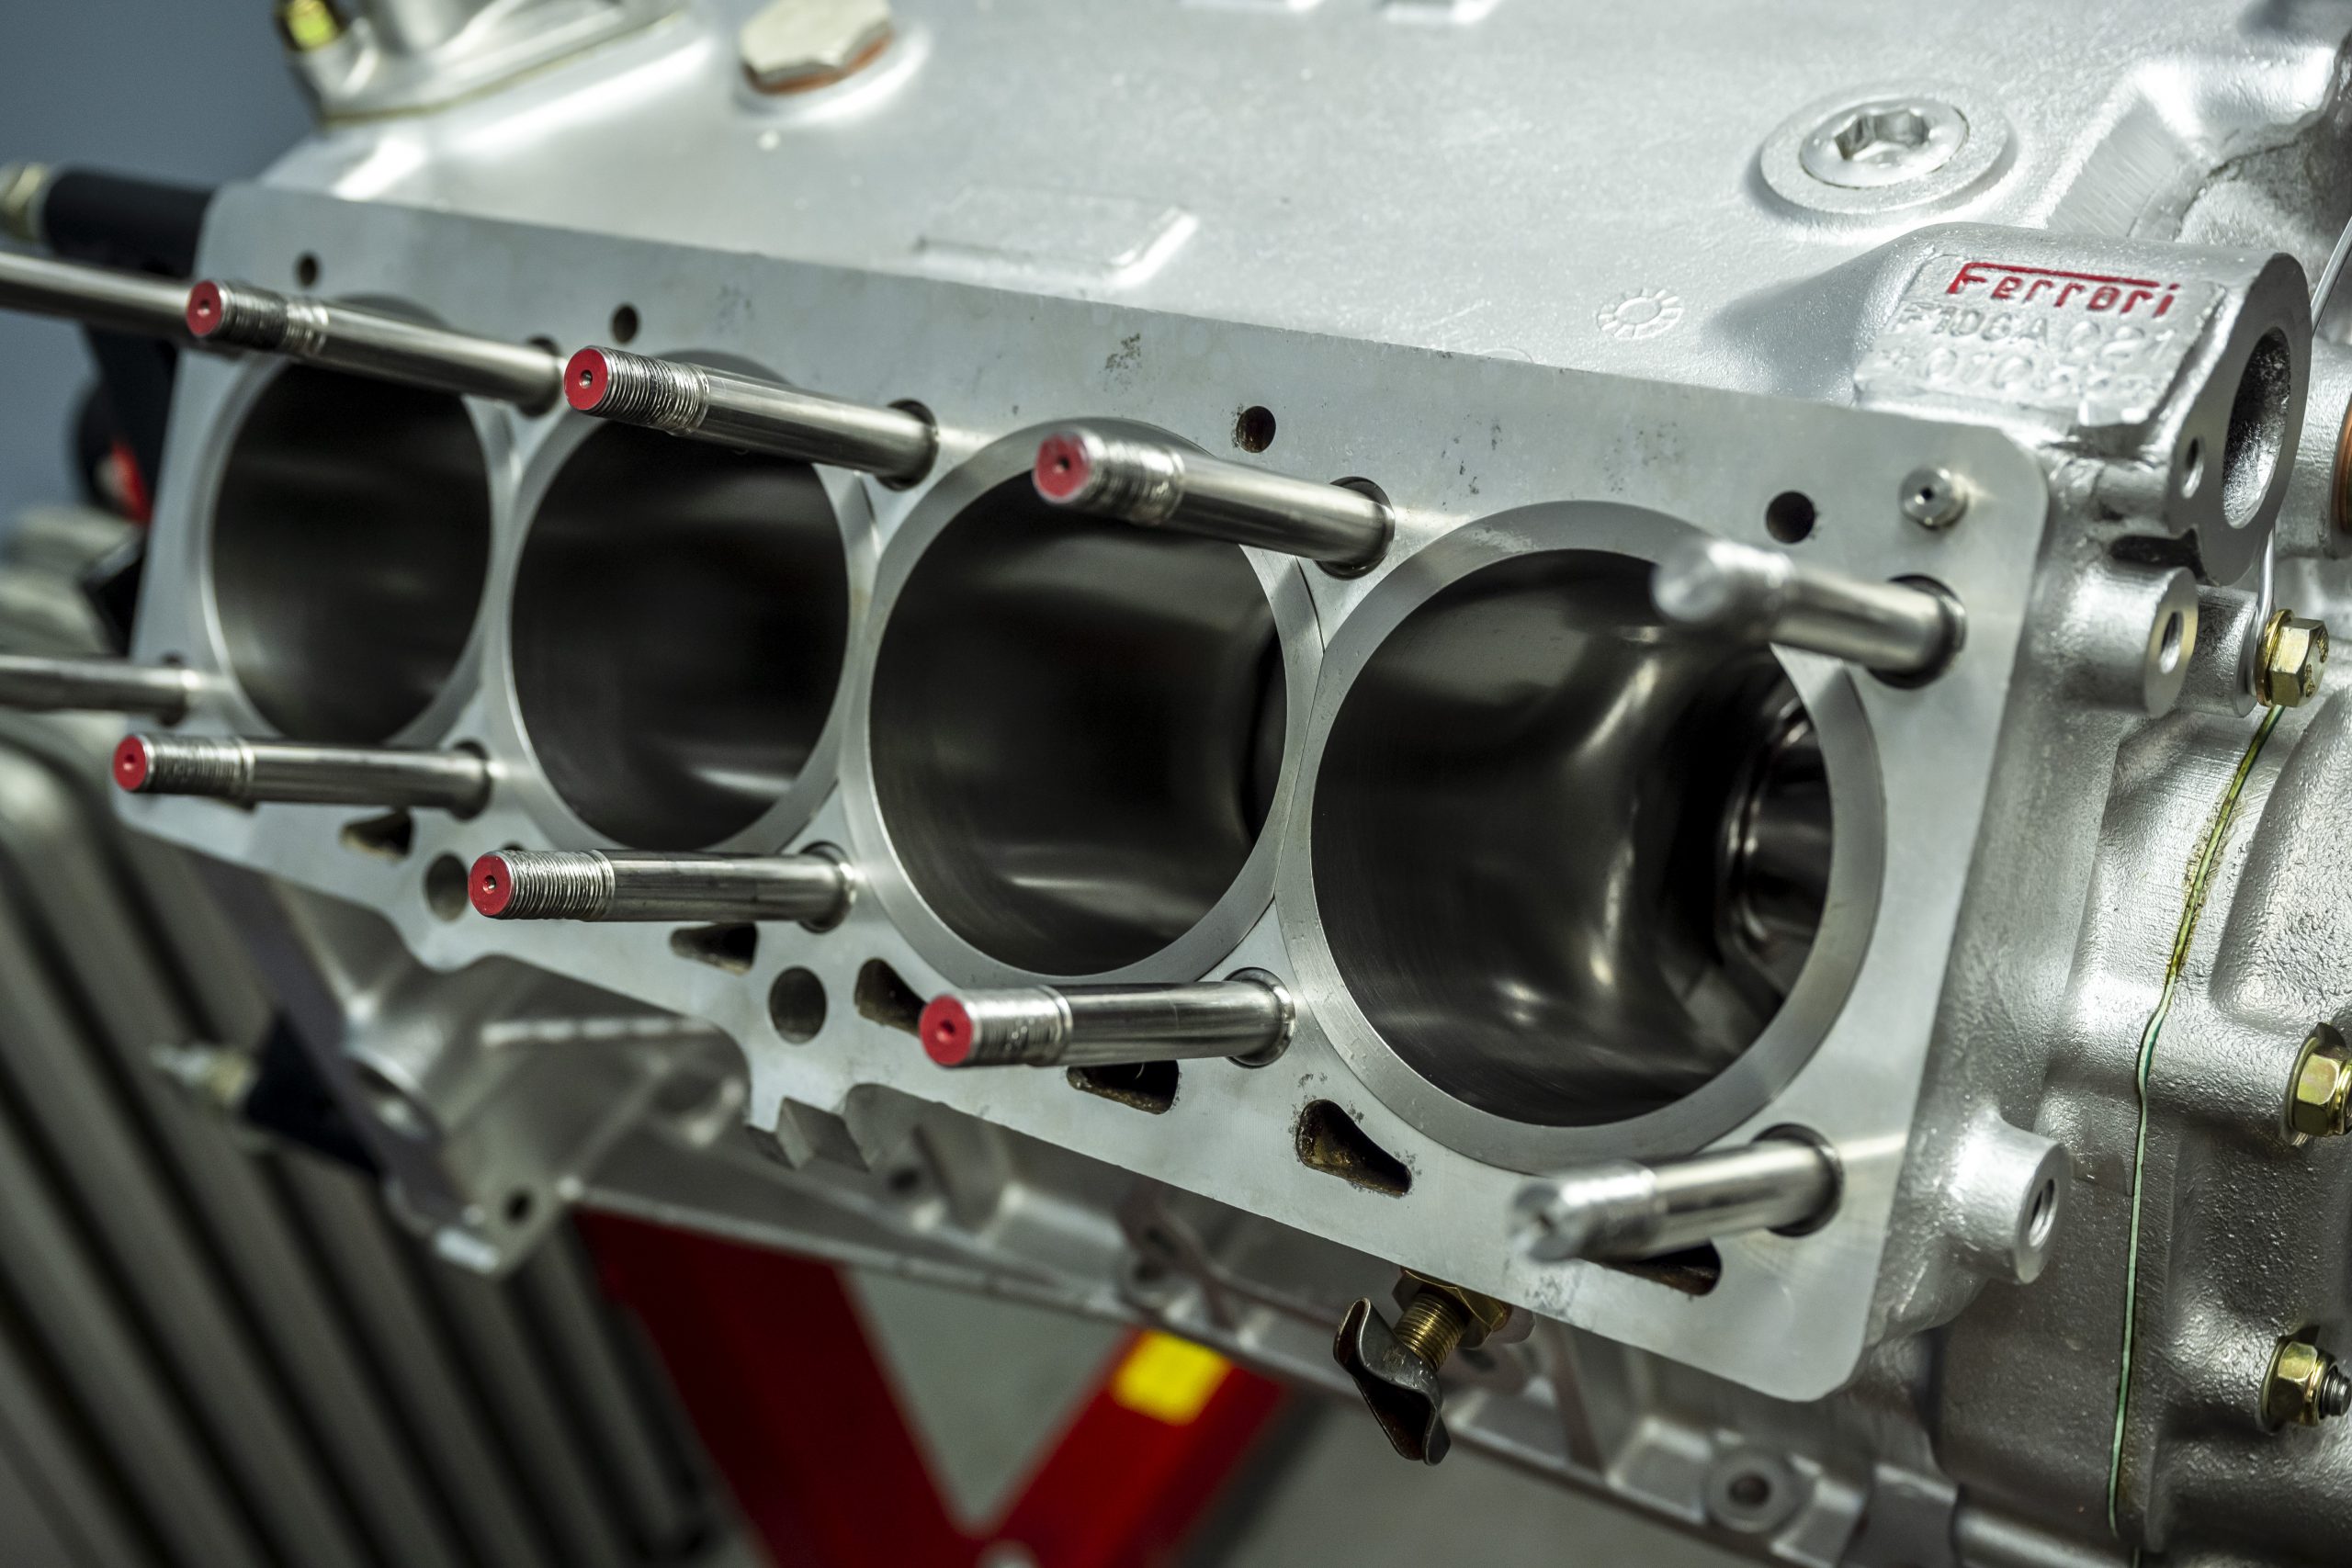 Ferrari engine rebuild Moto Technique